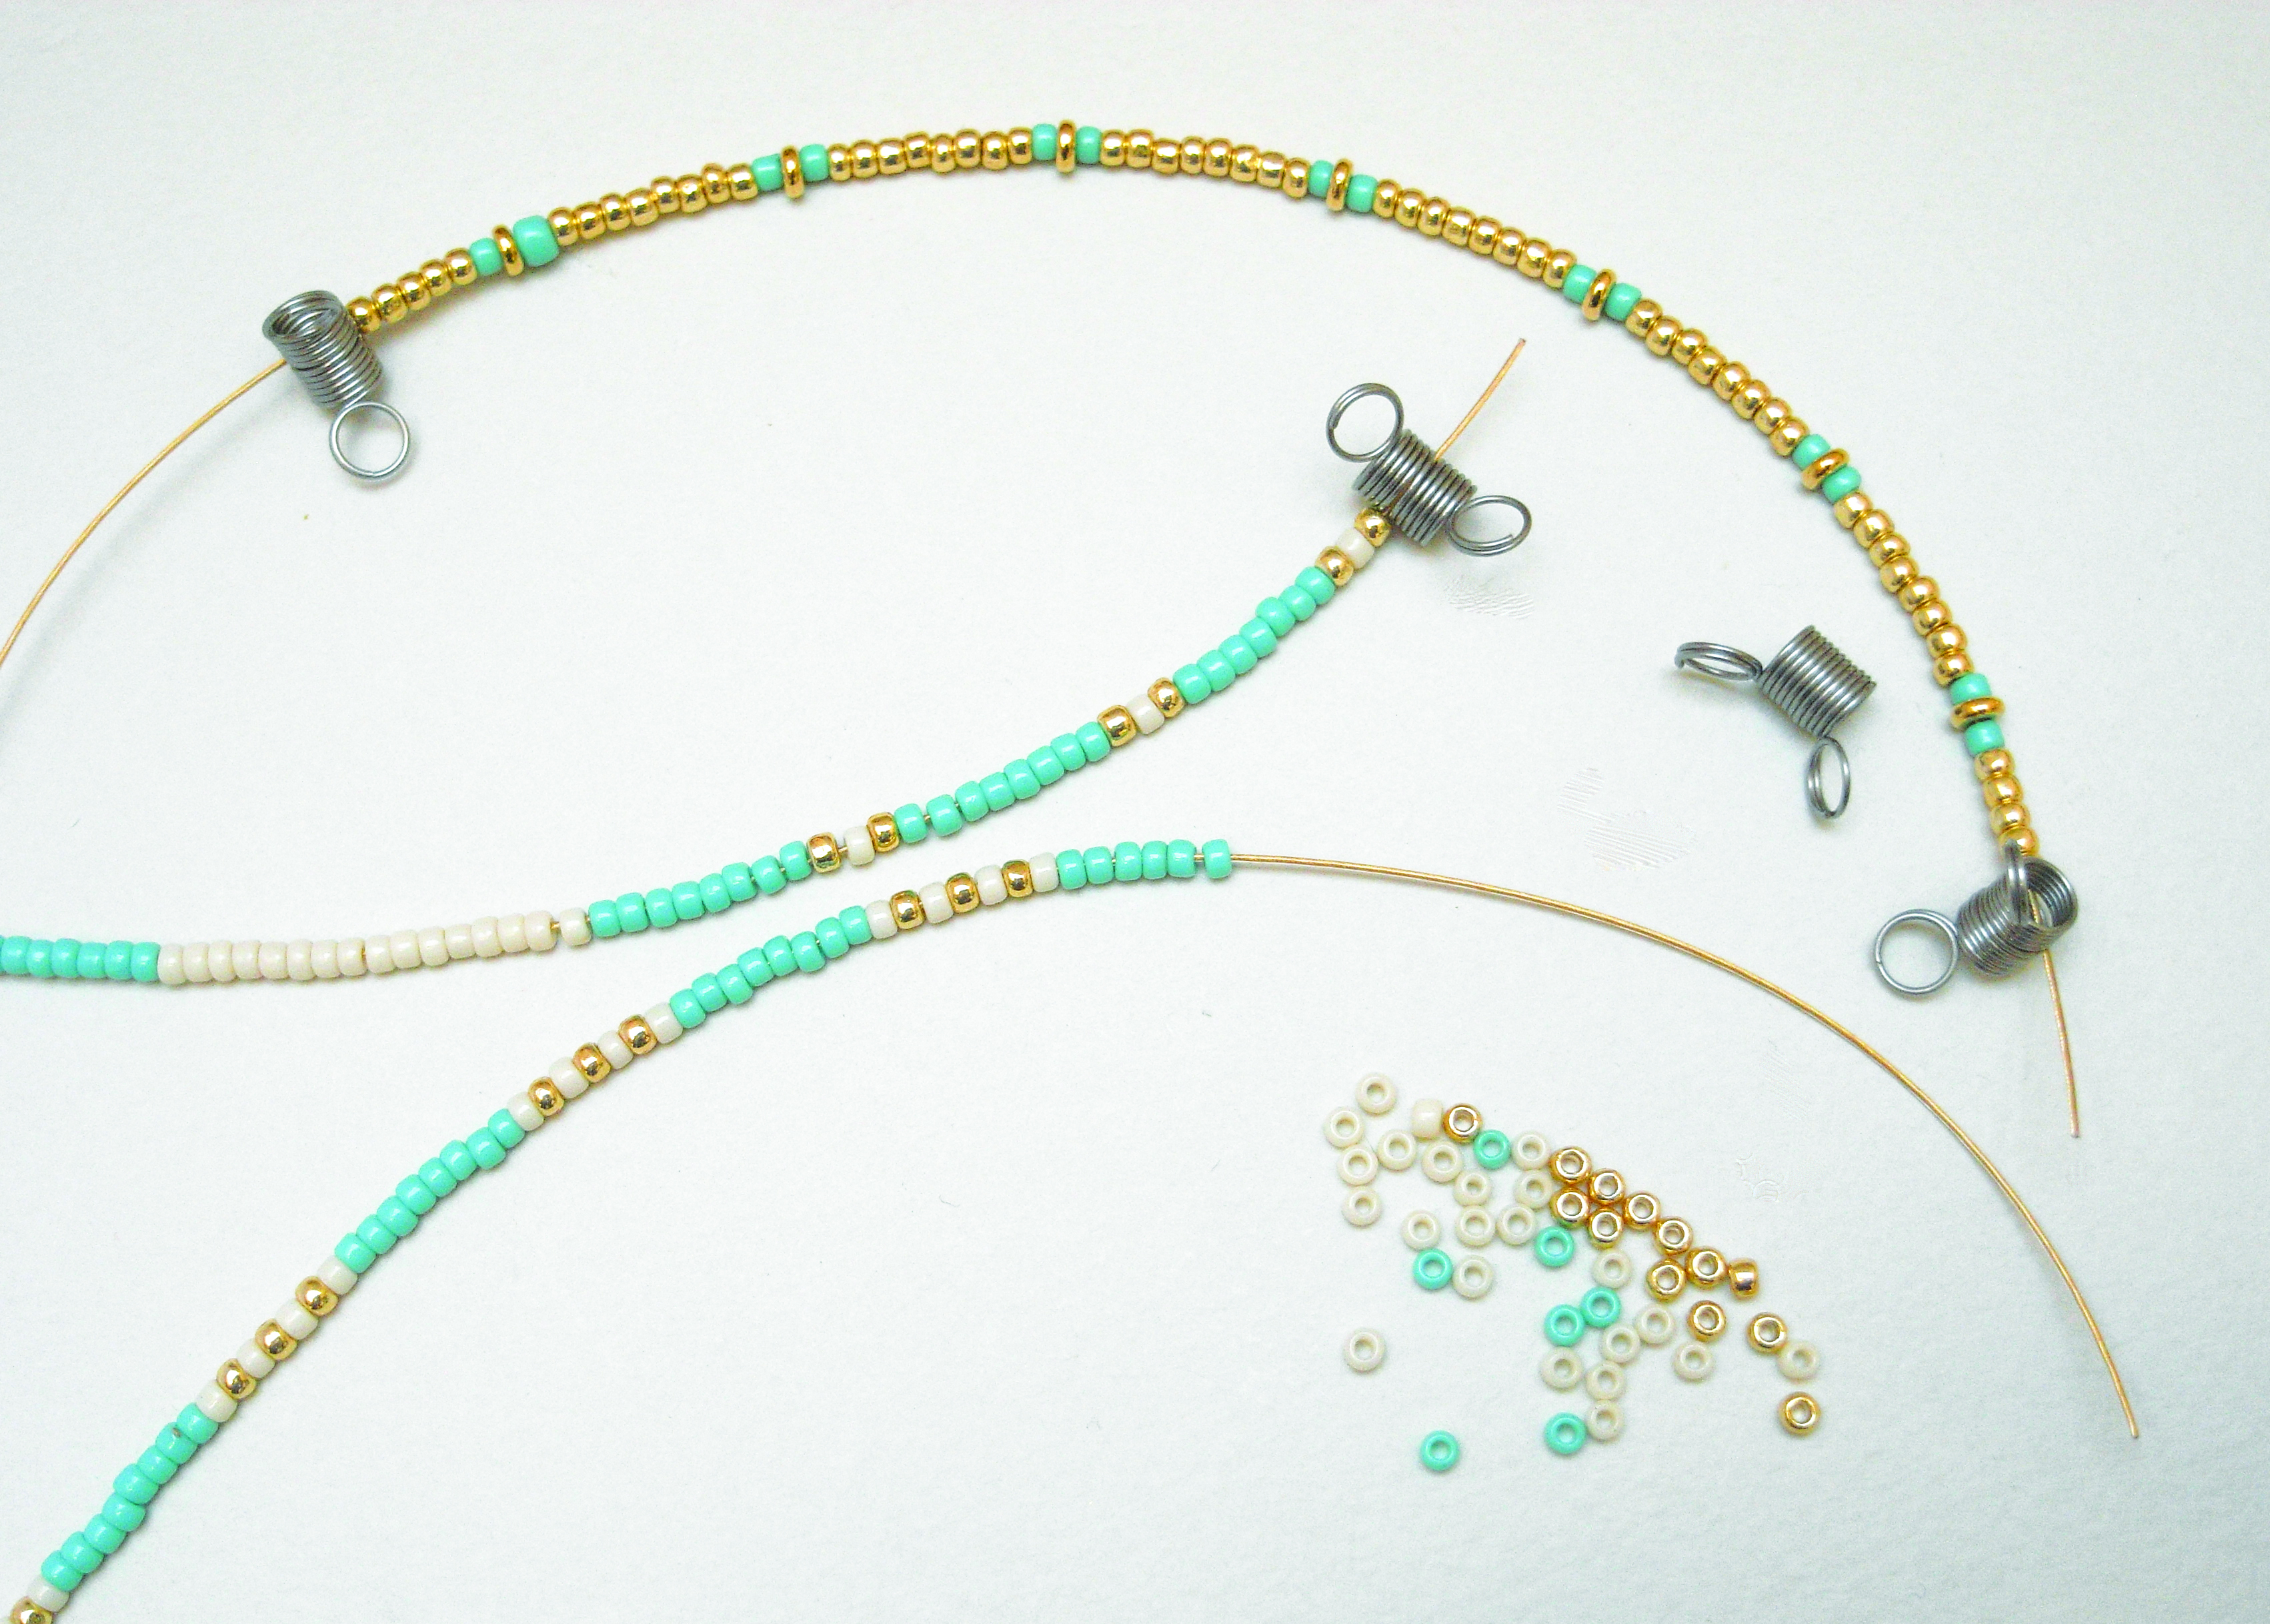 How to make seed bead bracelets